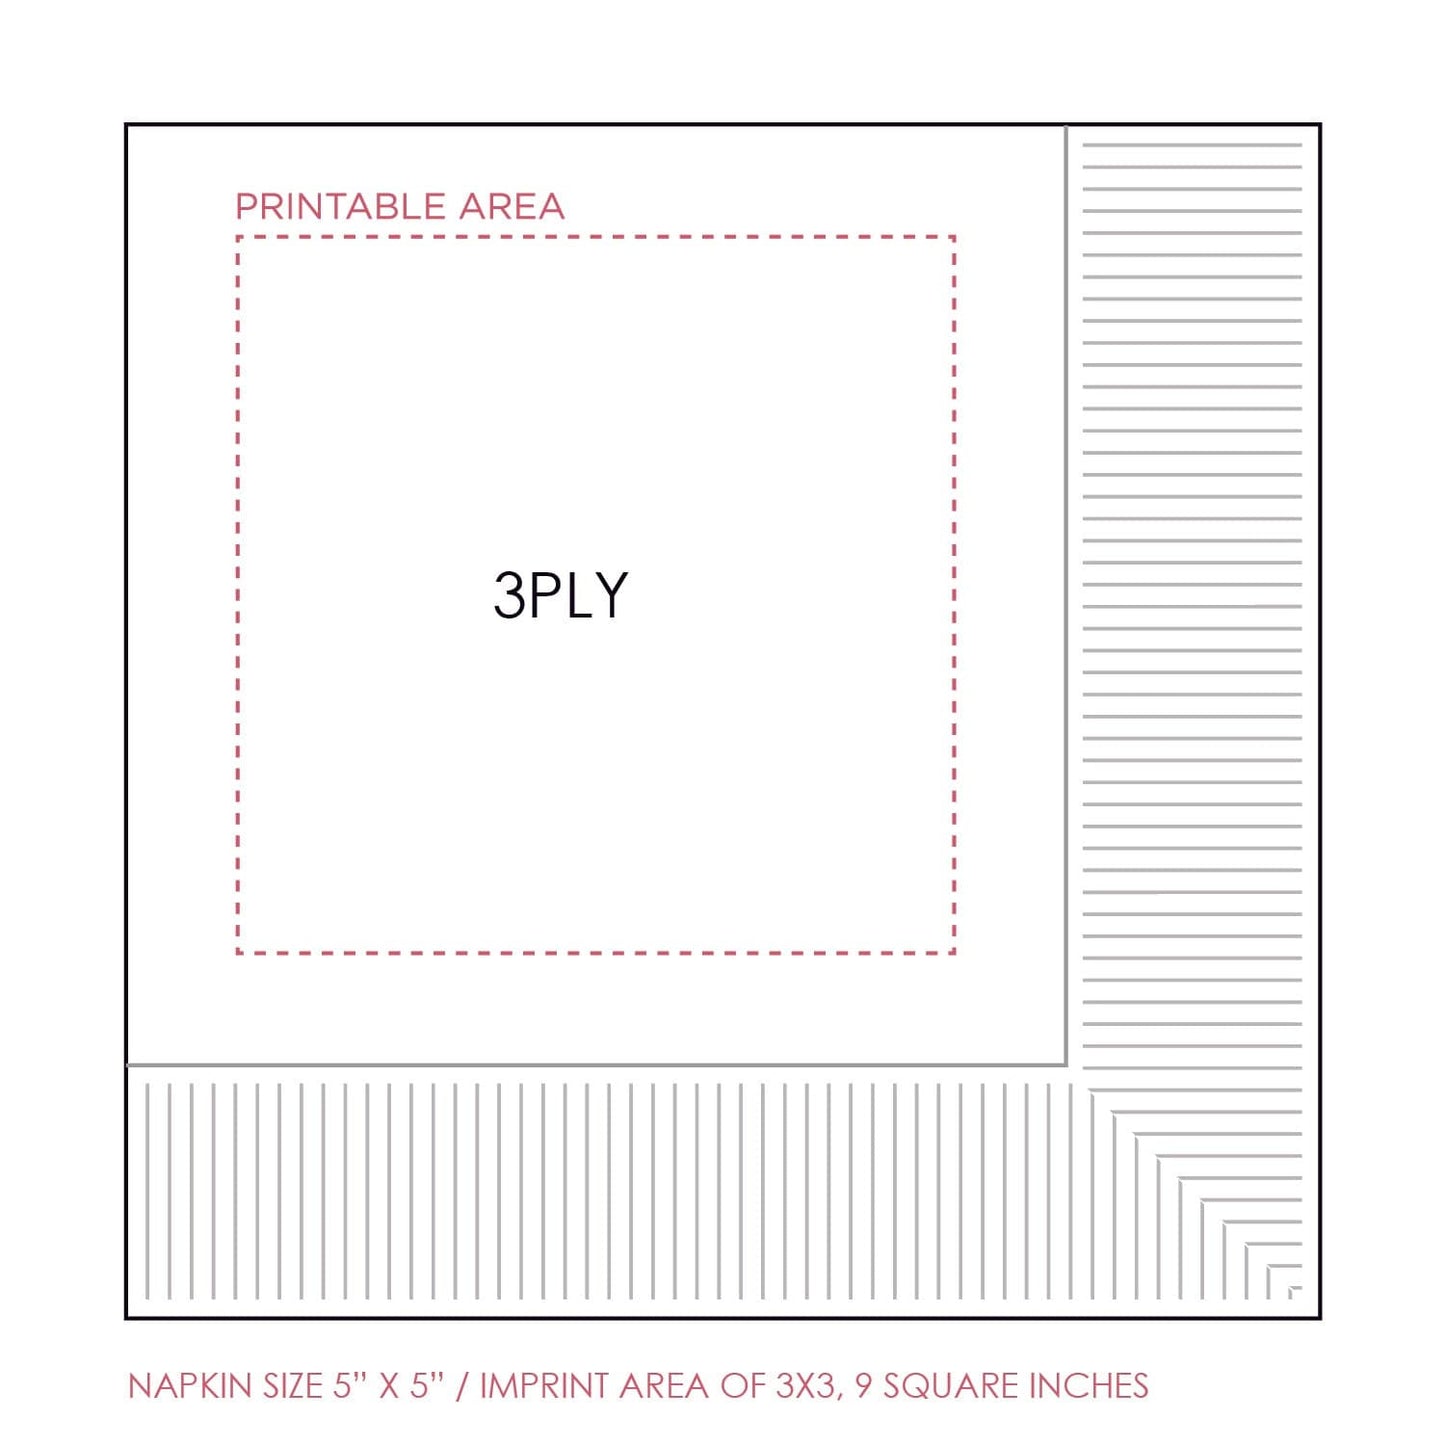 frame 1 | beverage napkins | 3ply or linen